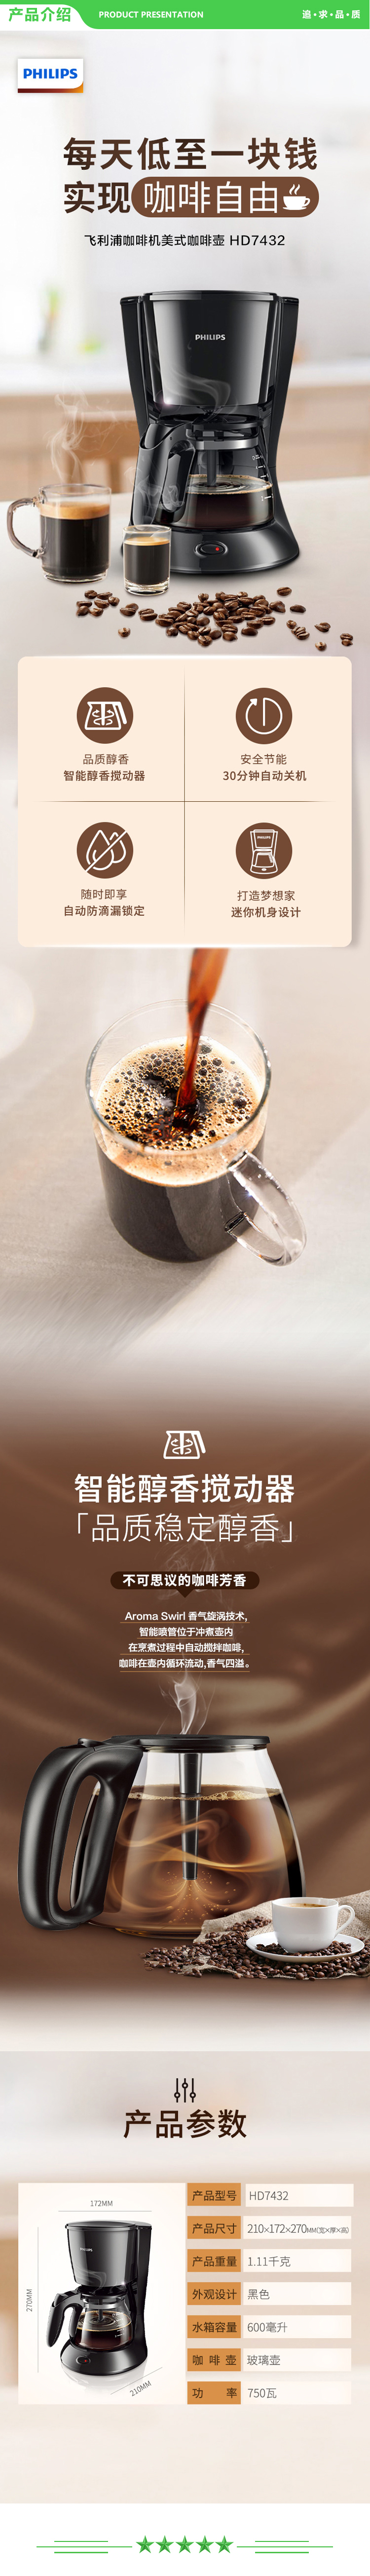 飞利浦 PHILIPS HD7432 20 咖啡机  滴漏式美式MINI咖啡壶 .jpg